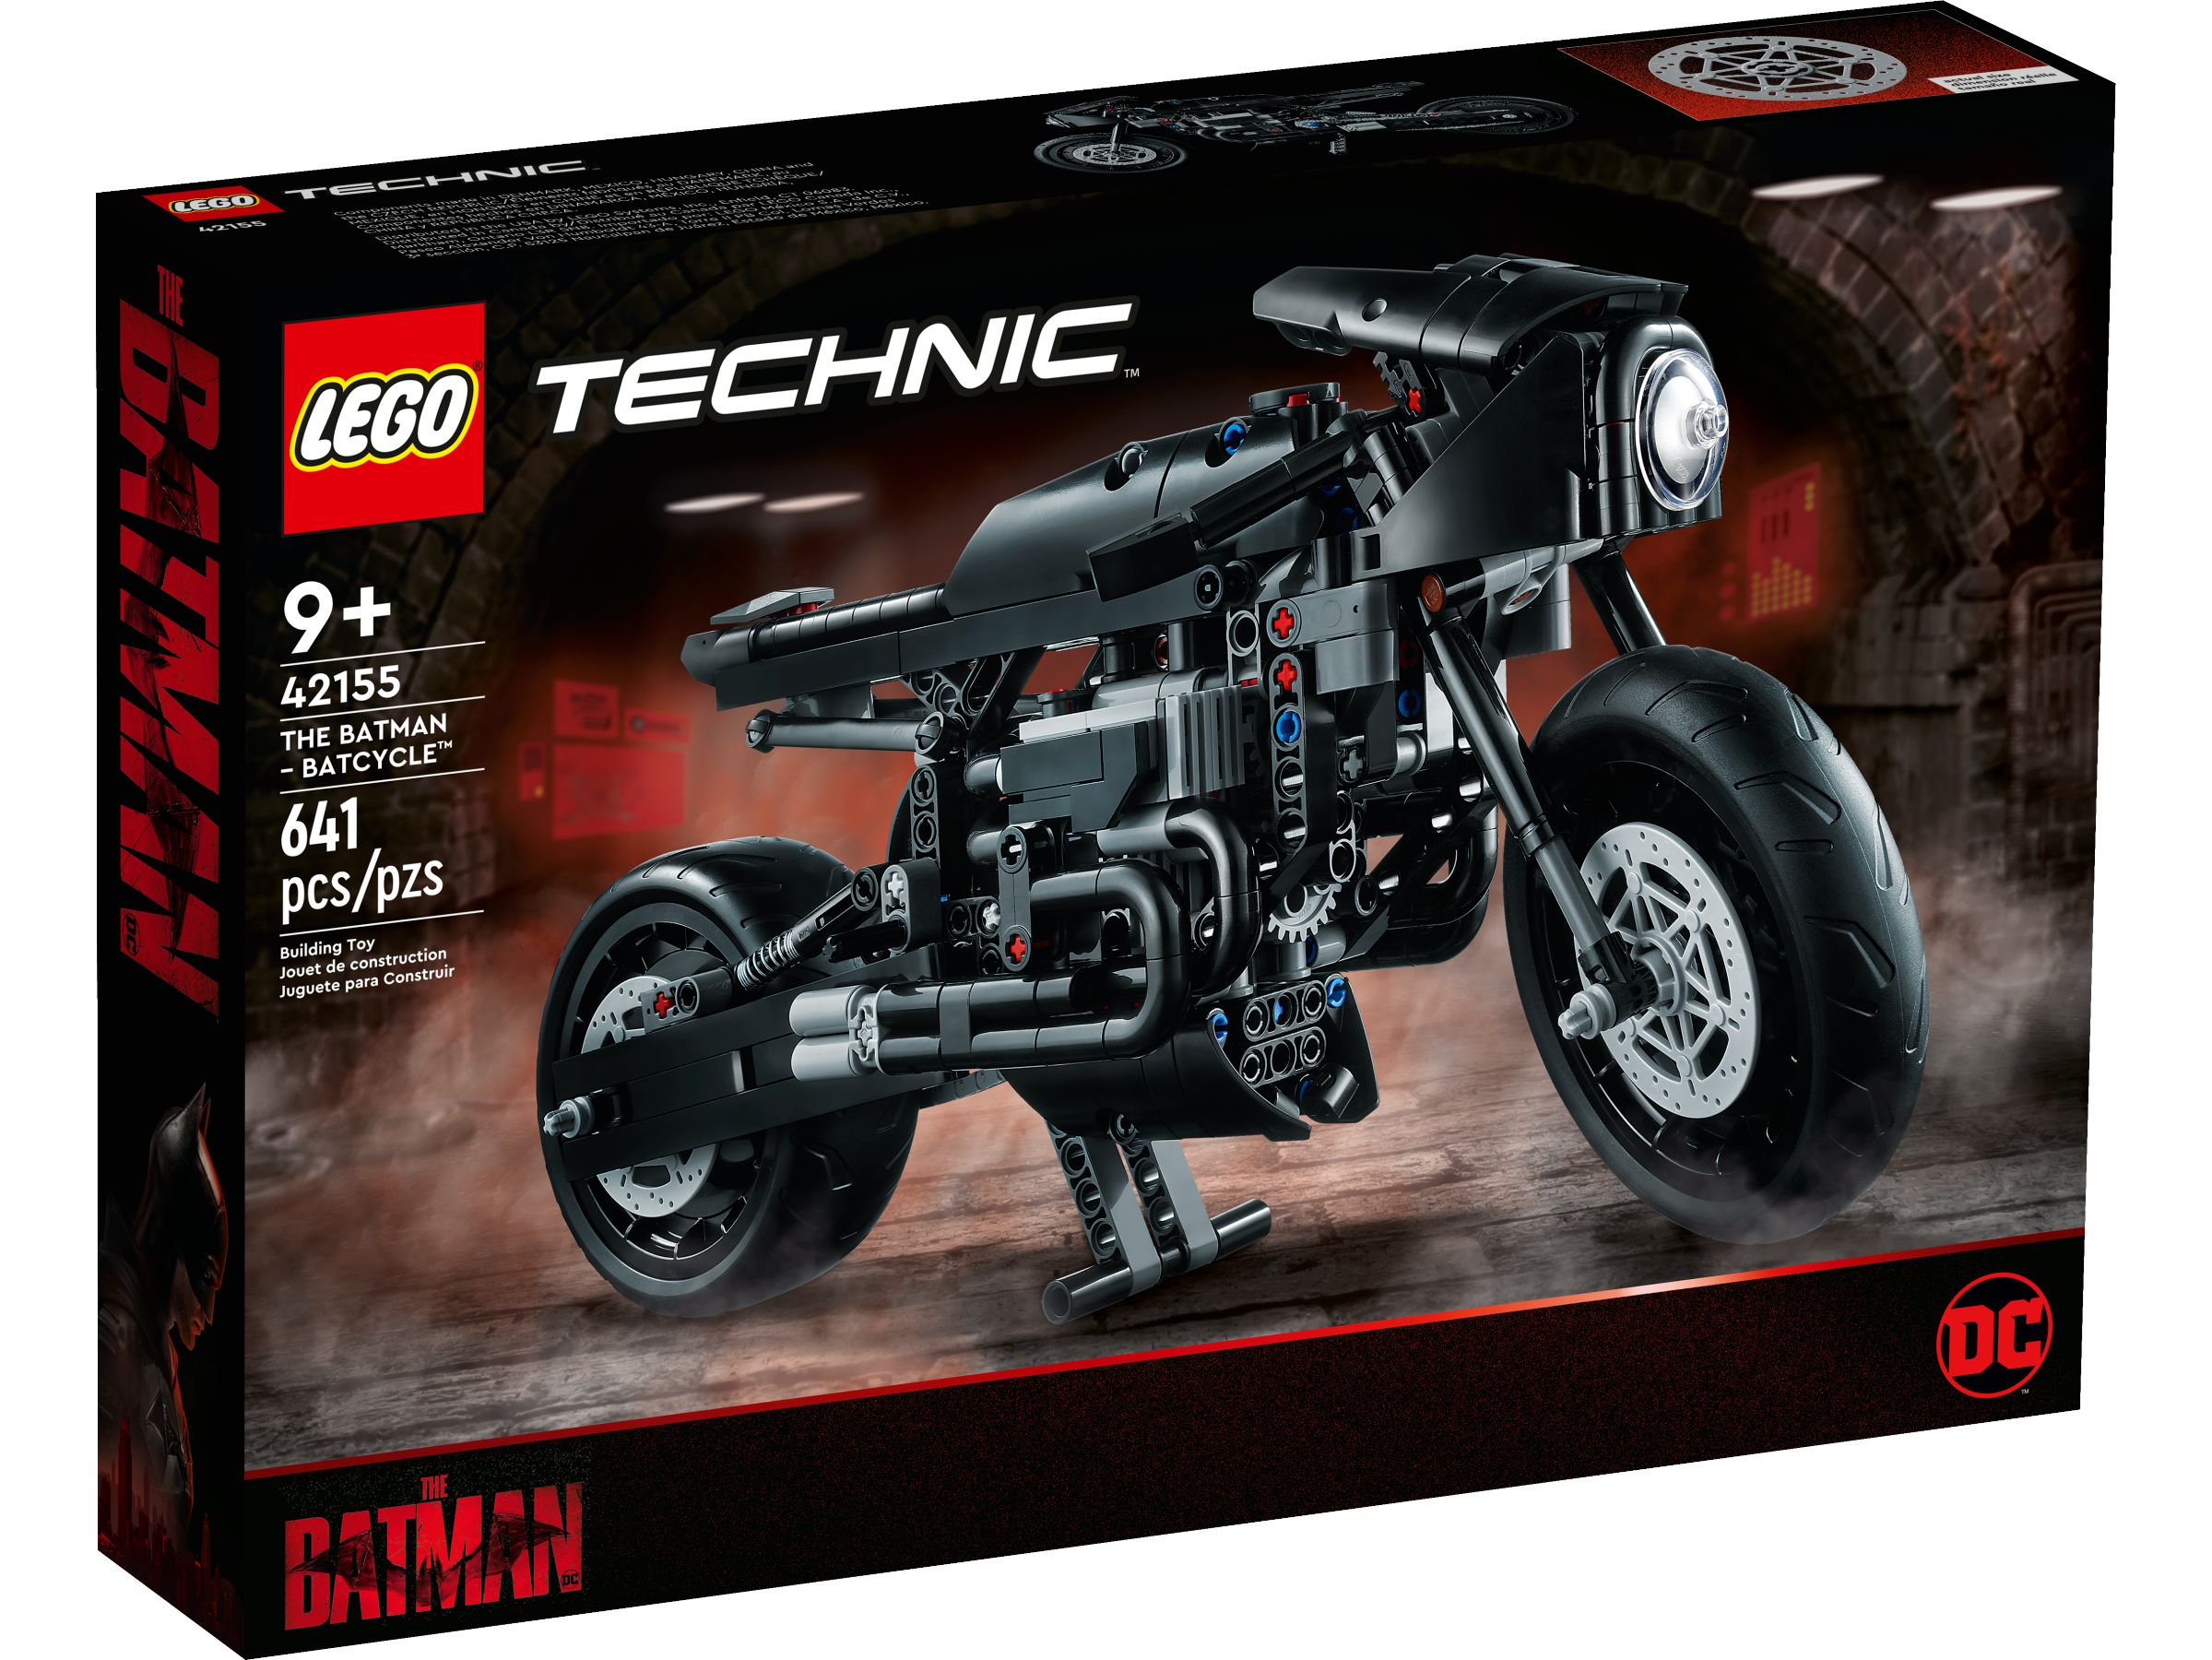 LEGO Technic 42155 THE BATMAN – BATCYCLE™ LEGO_42155_alt1.jpg